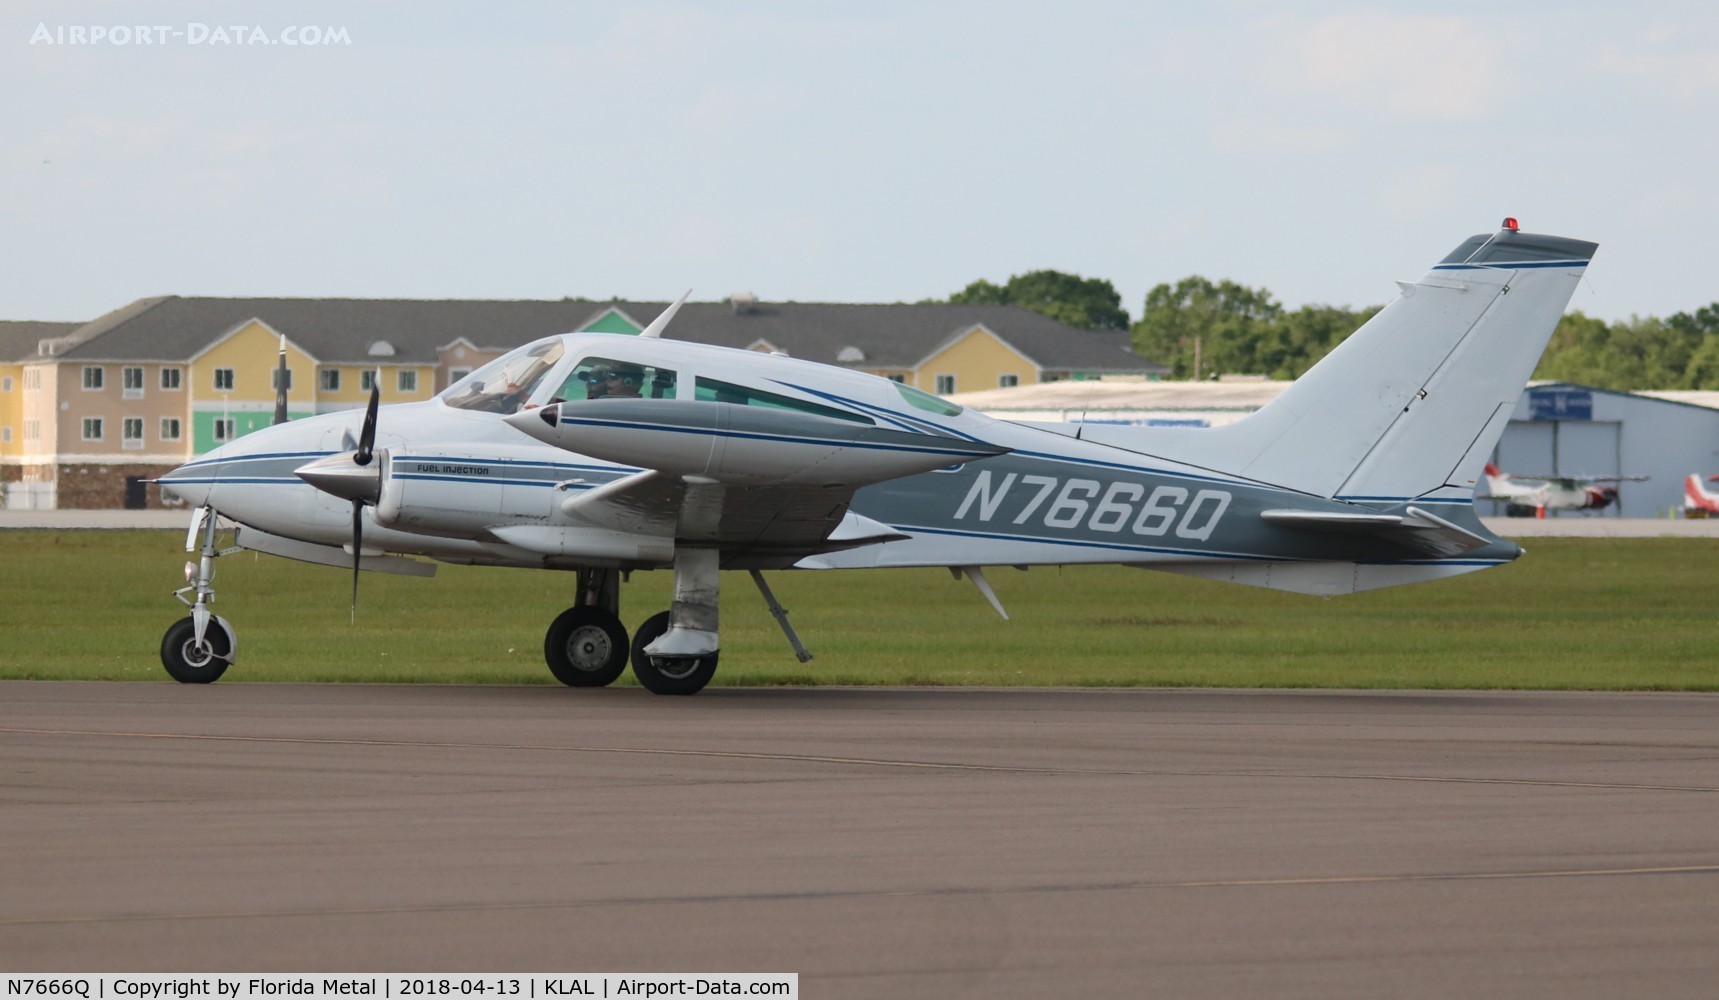 N7666Q, 1972 Cessna 310Q C/N 310Q0445, Cessna 310Q